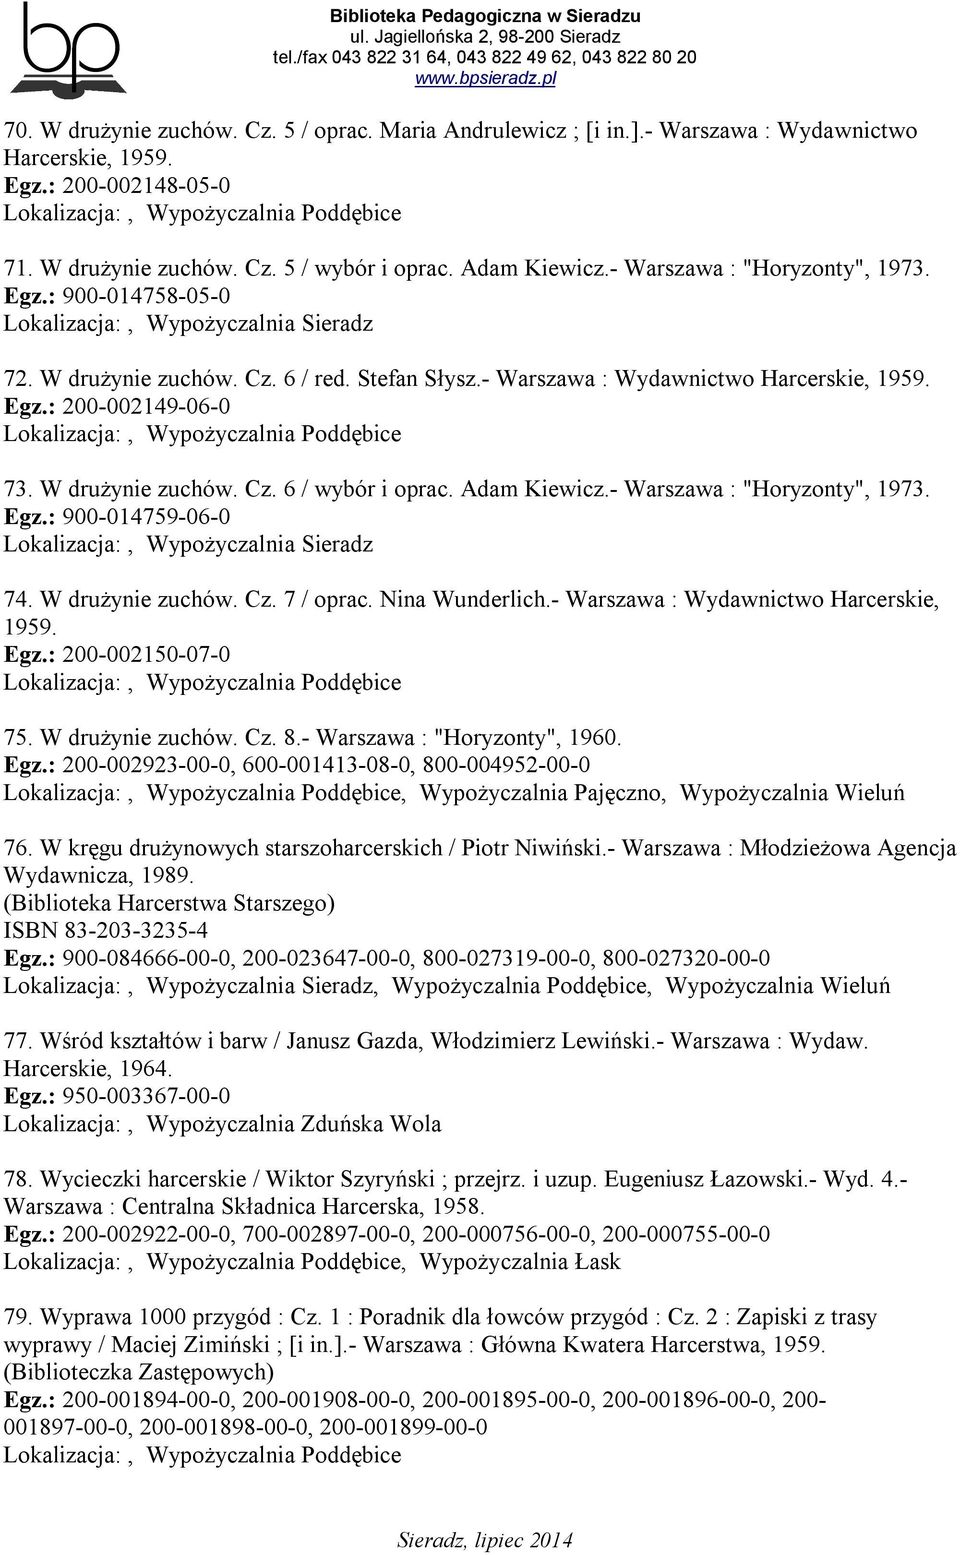 Adam Kiewicz.- Warszawa : "Horyzonty", 1973. Egz.: 900-014759-06-0 74. W drużynie zuchów. Cz. 7 / oprac. Nina Wunderlich.- Warszawa : Wydawnictwo Harcerskie, 1959. Egz.: 200-002150-07-0 75.